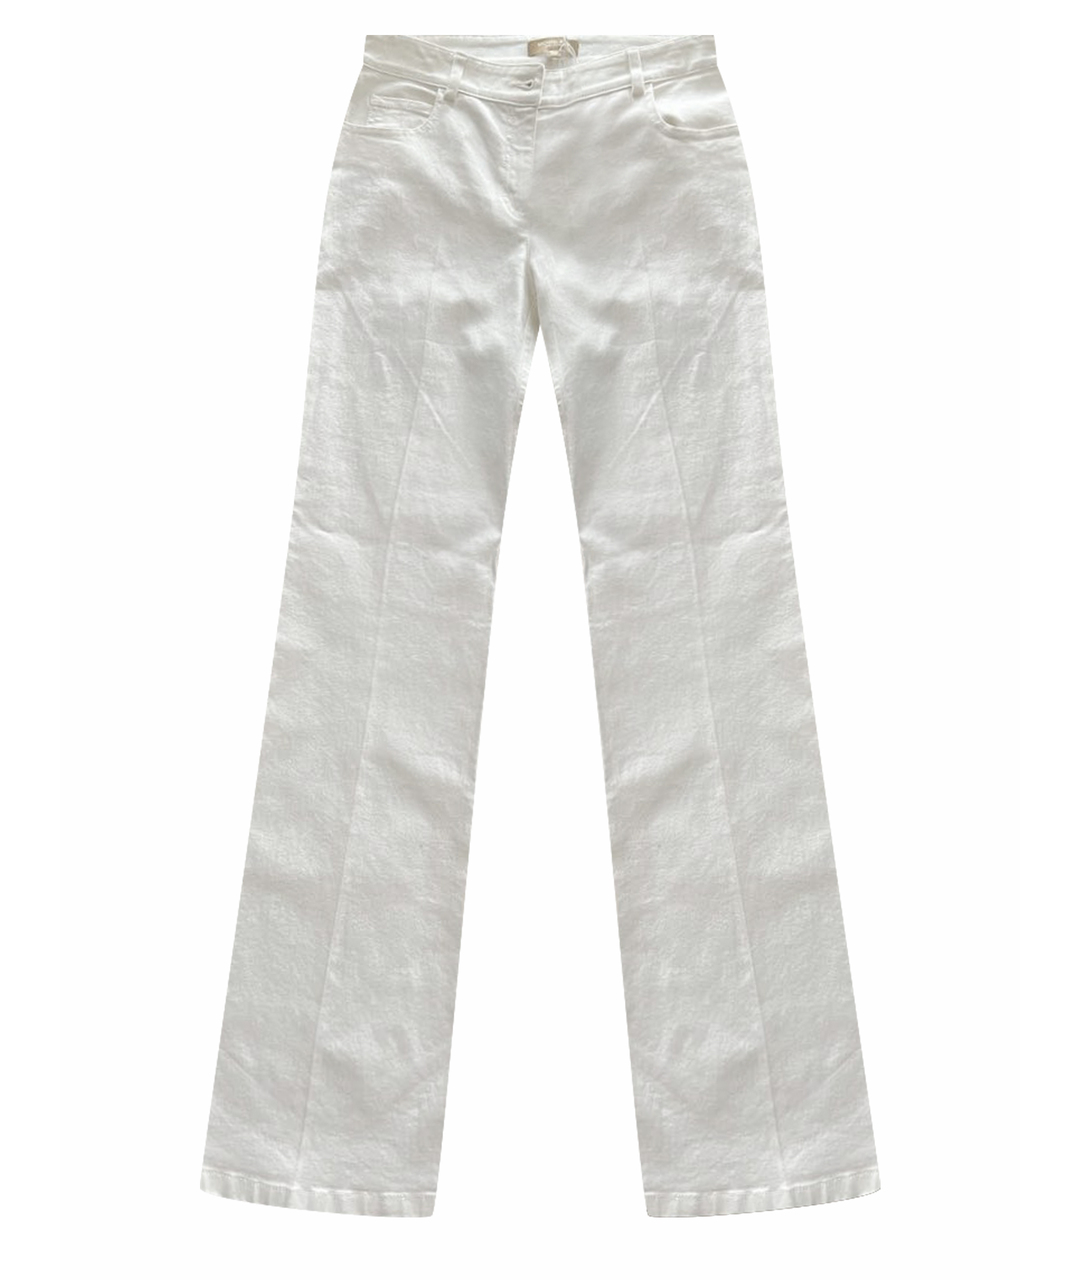 MICHAEL KORS COLLECTION Белые хлопковые джинсы клеш, фото 1